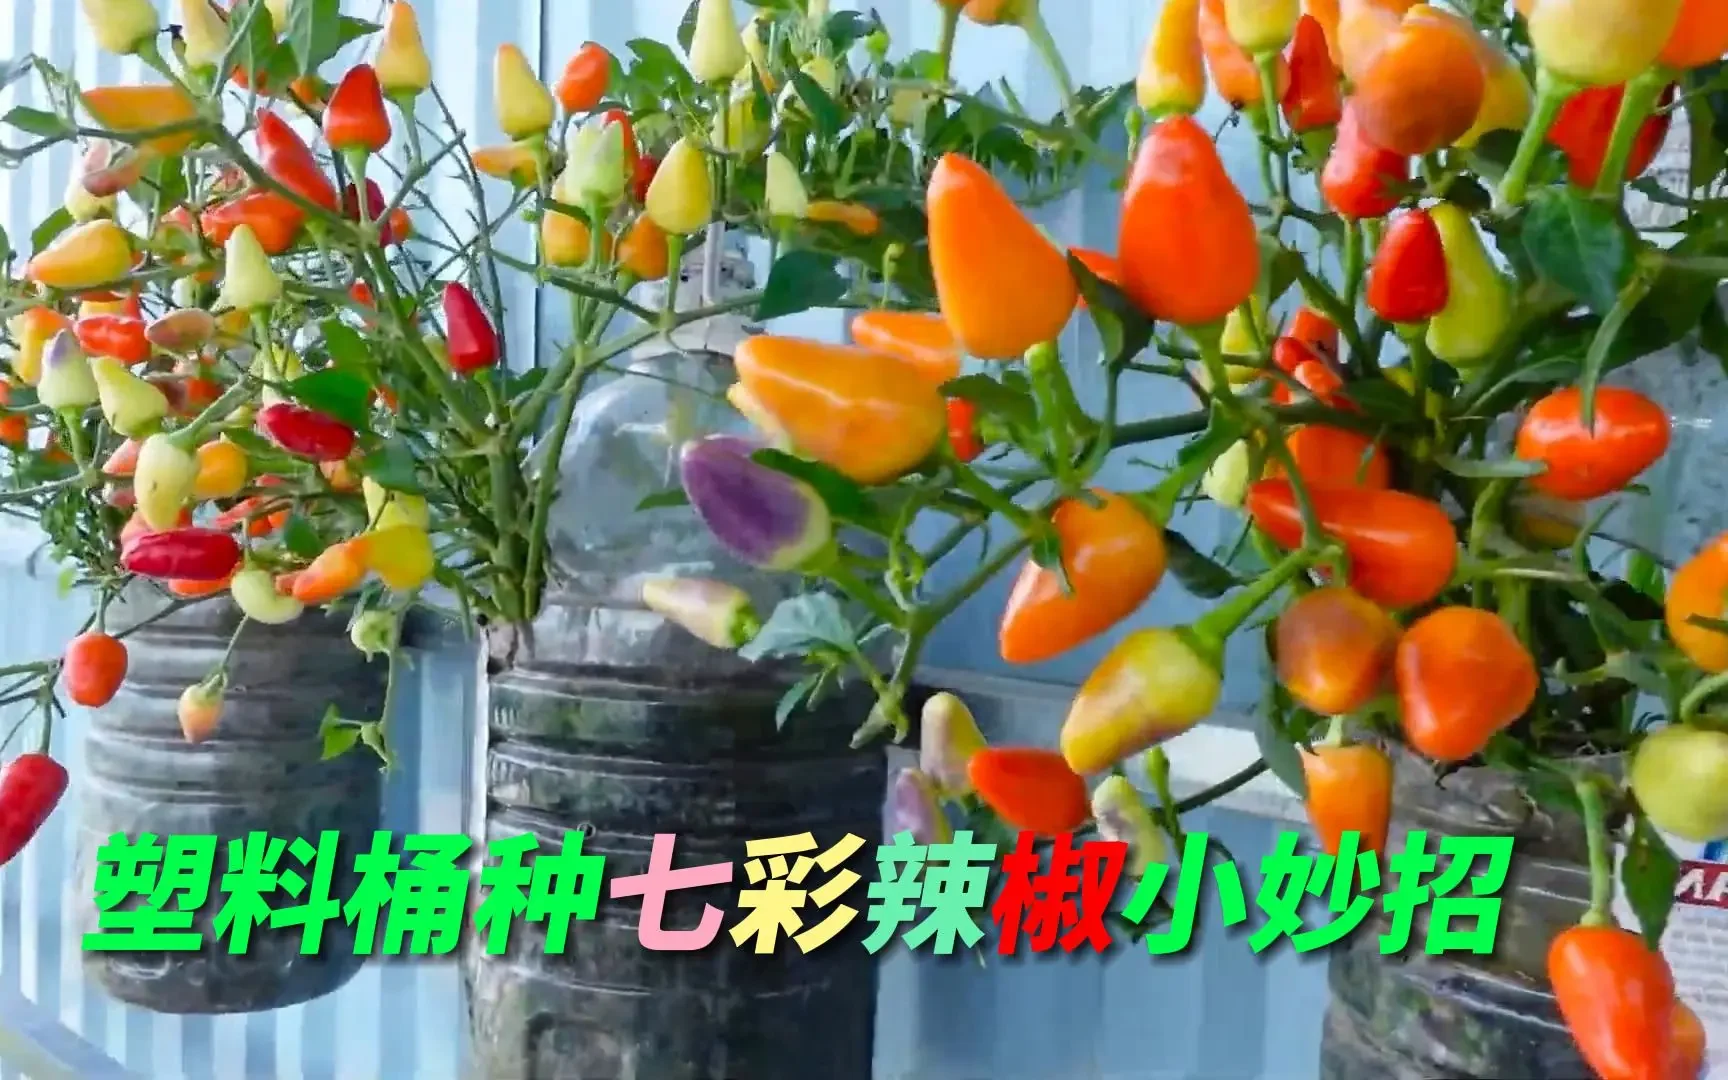 塑料桶不要浪费，改造一下用来种七彩辣椒，又省了一笔买菜钱